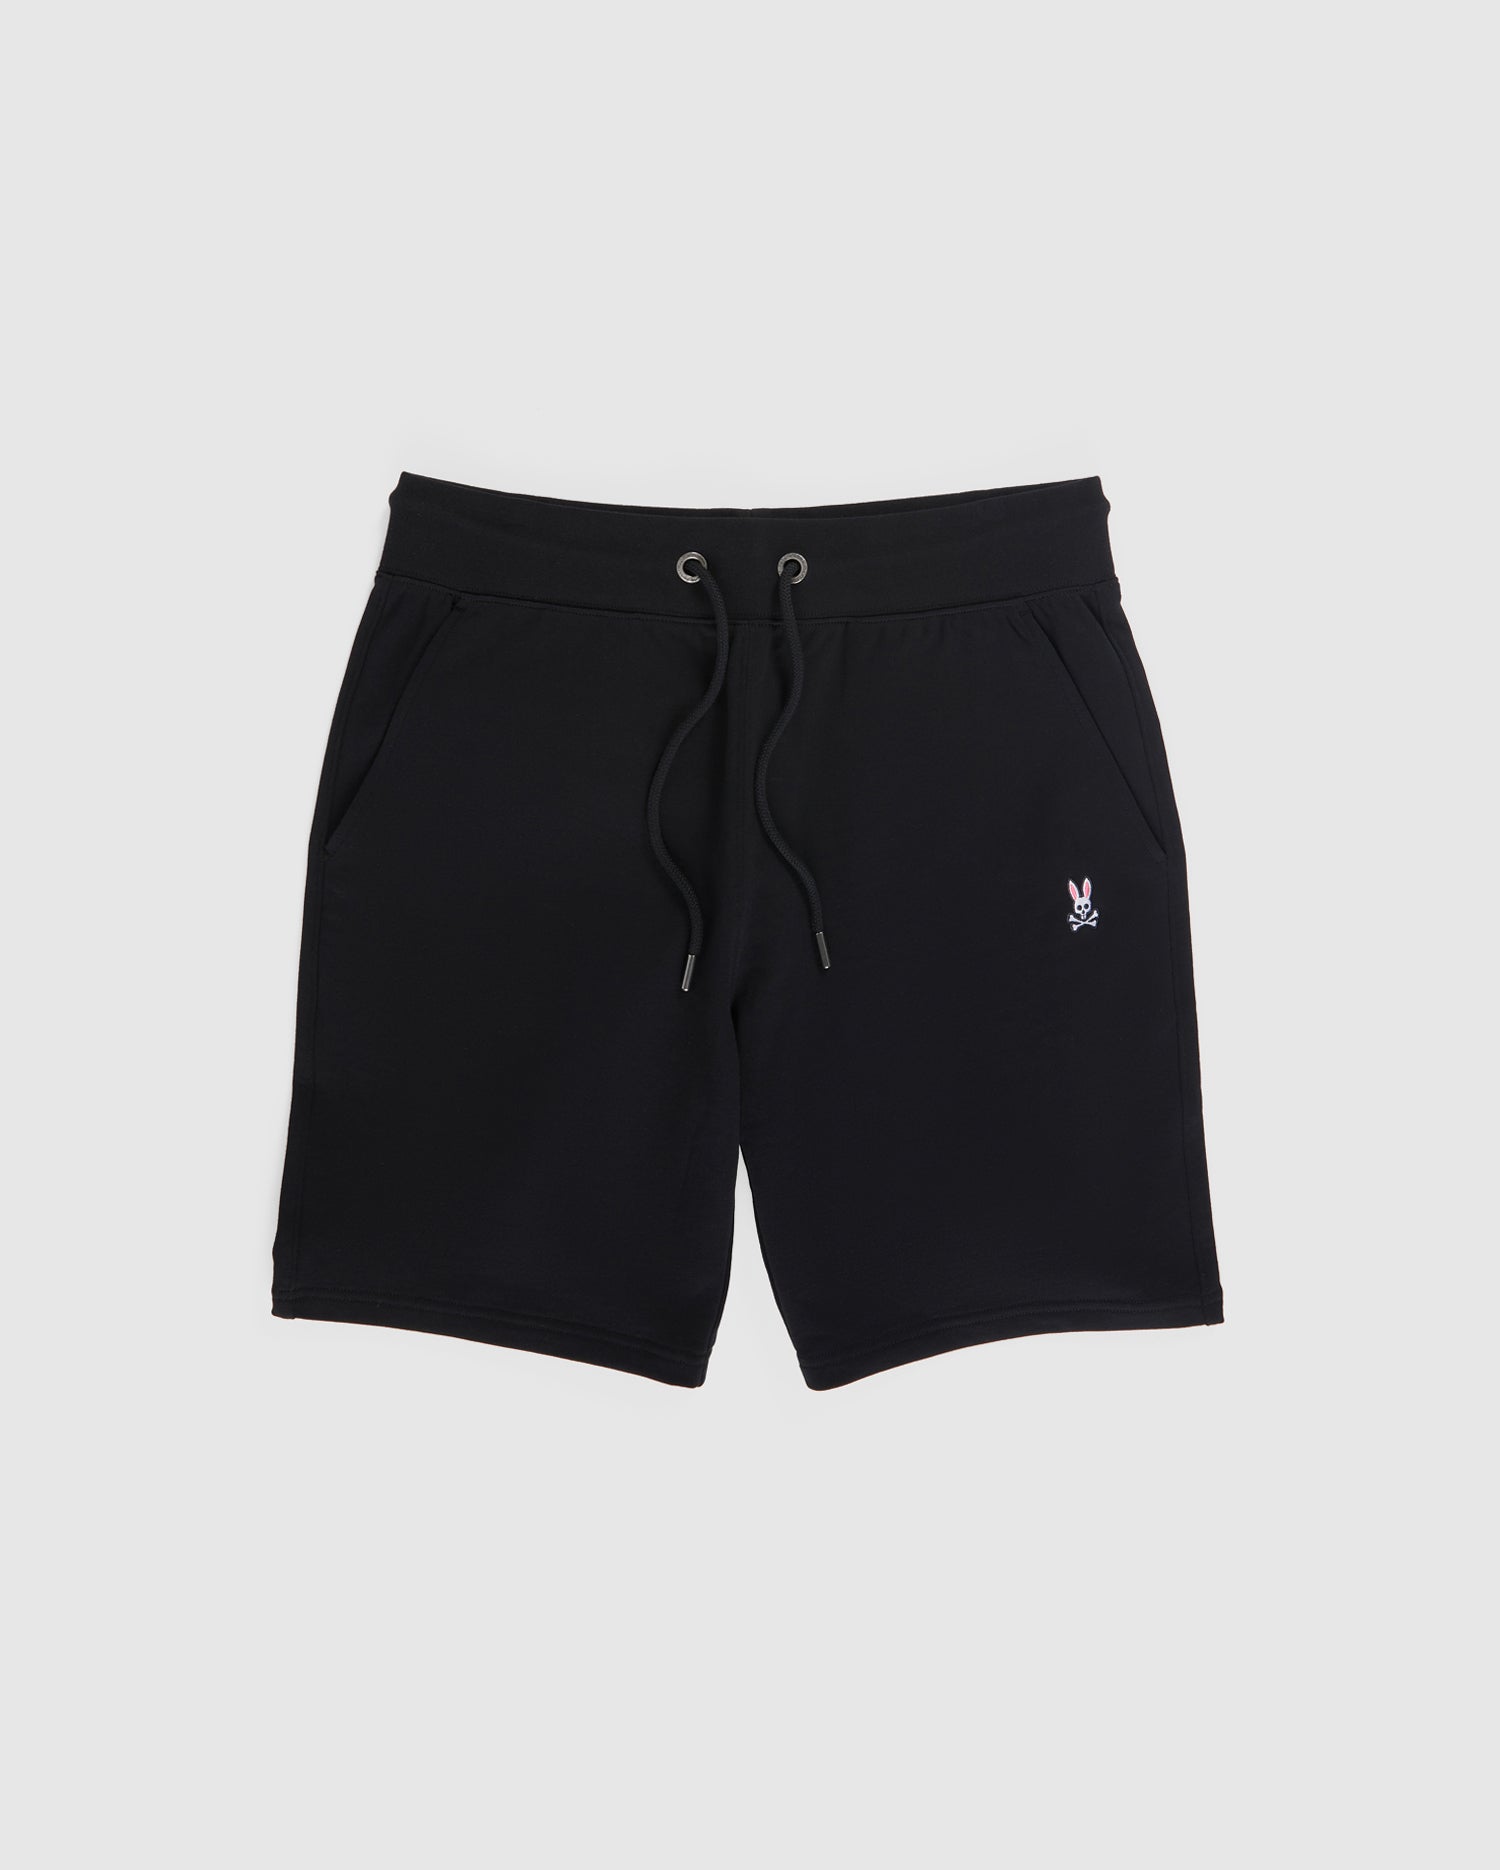 Men's Sale Shorts